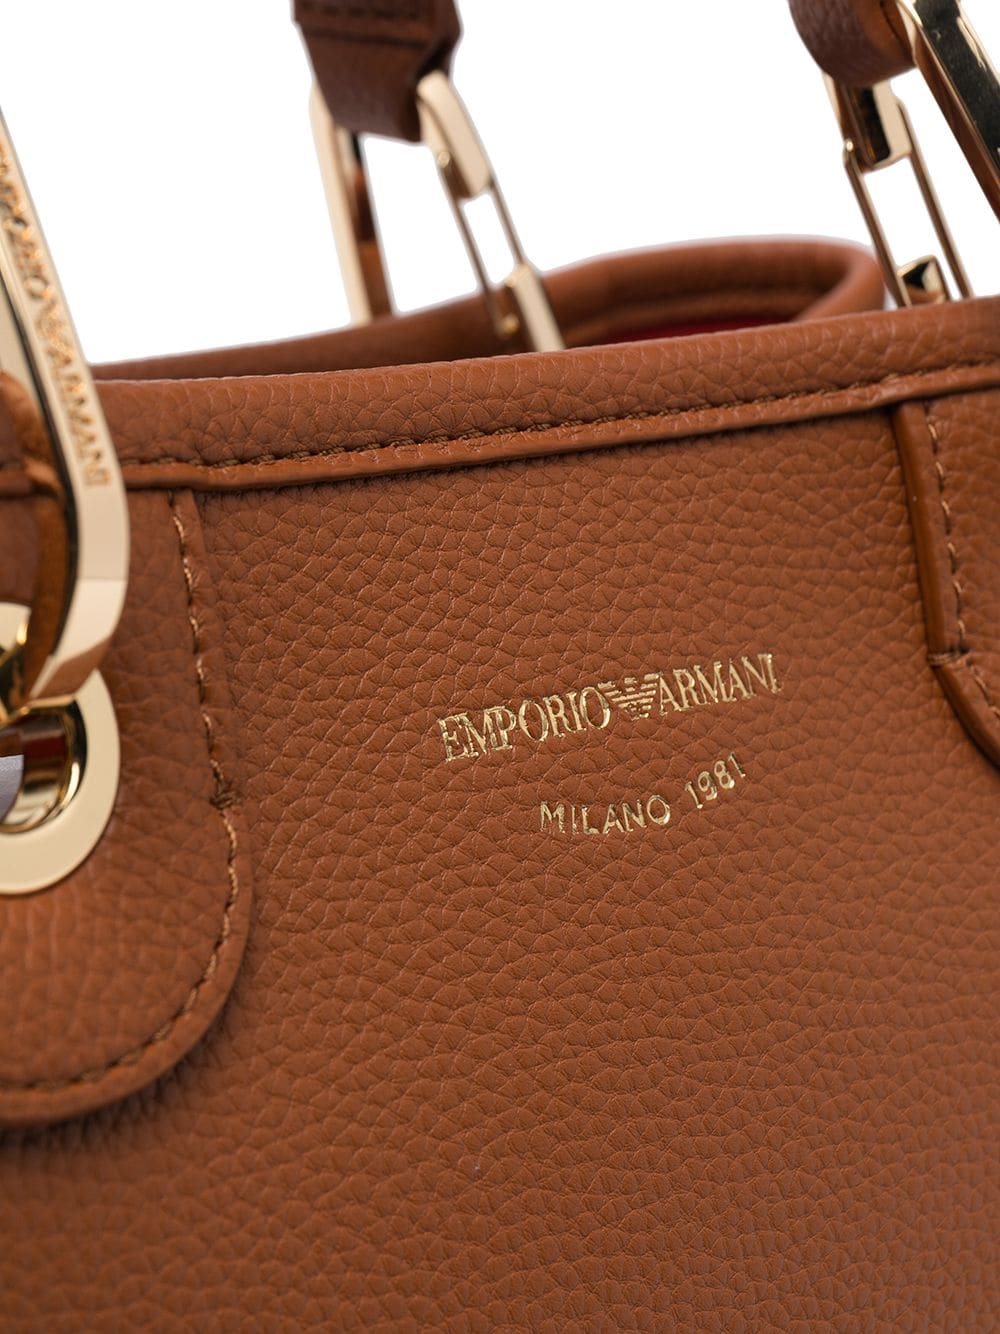 EMPORIO ARMANI SMALL SHOPPING Handbag